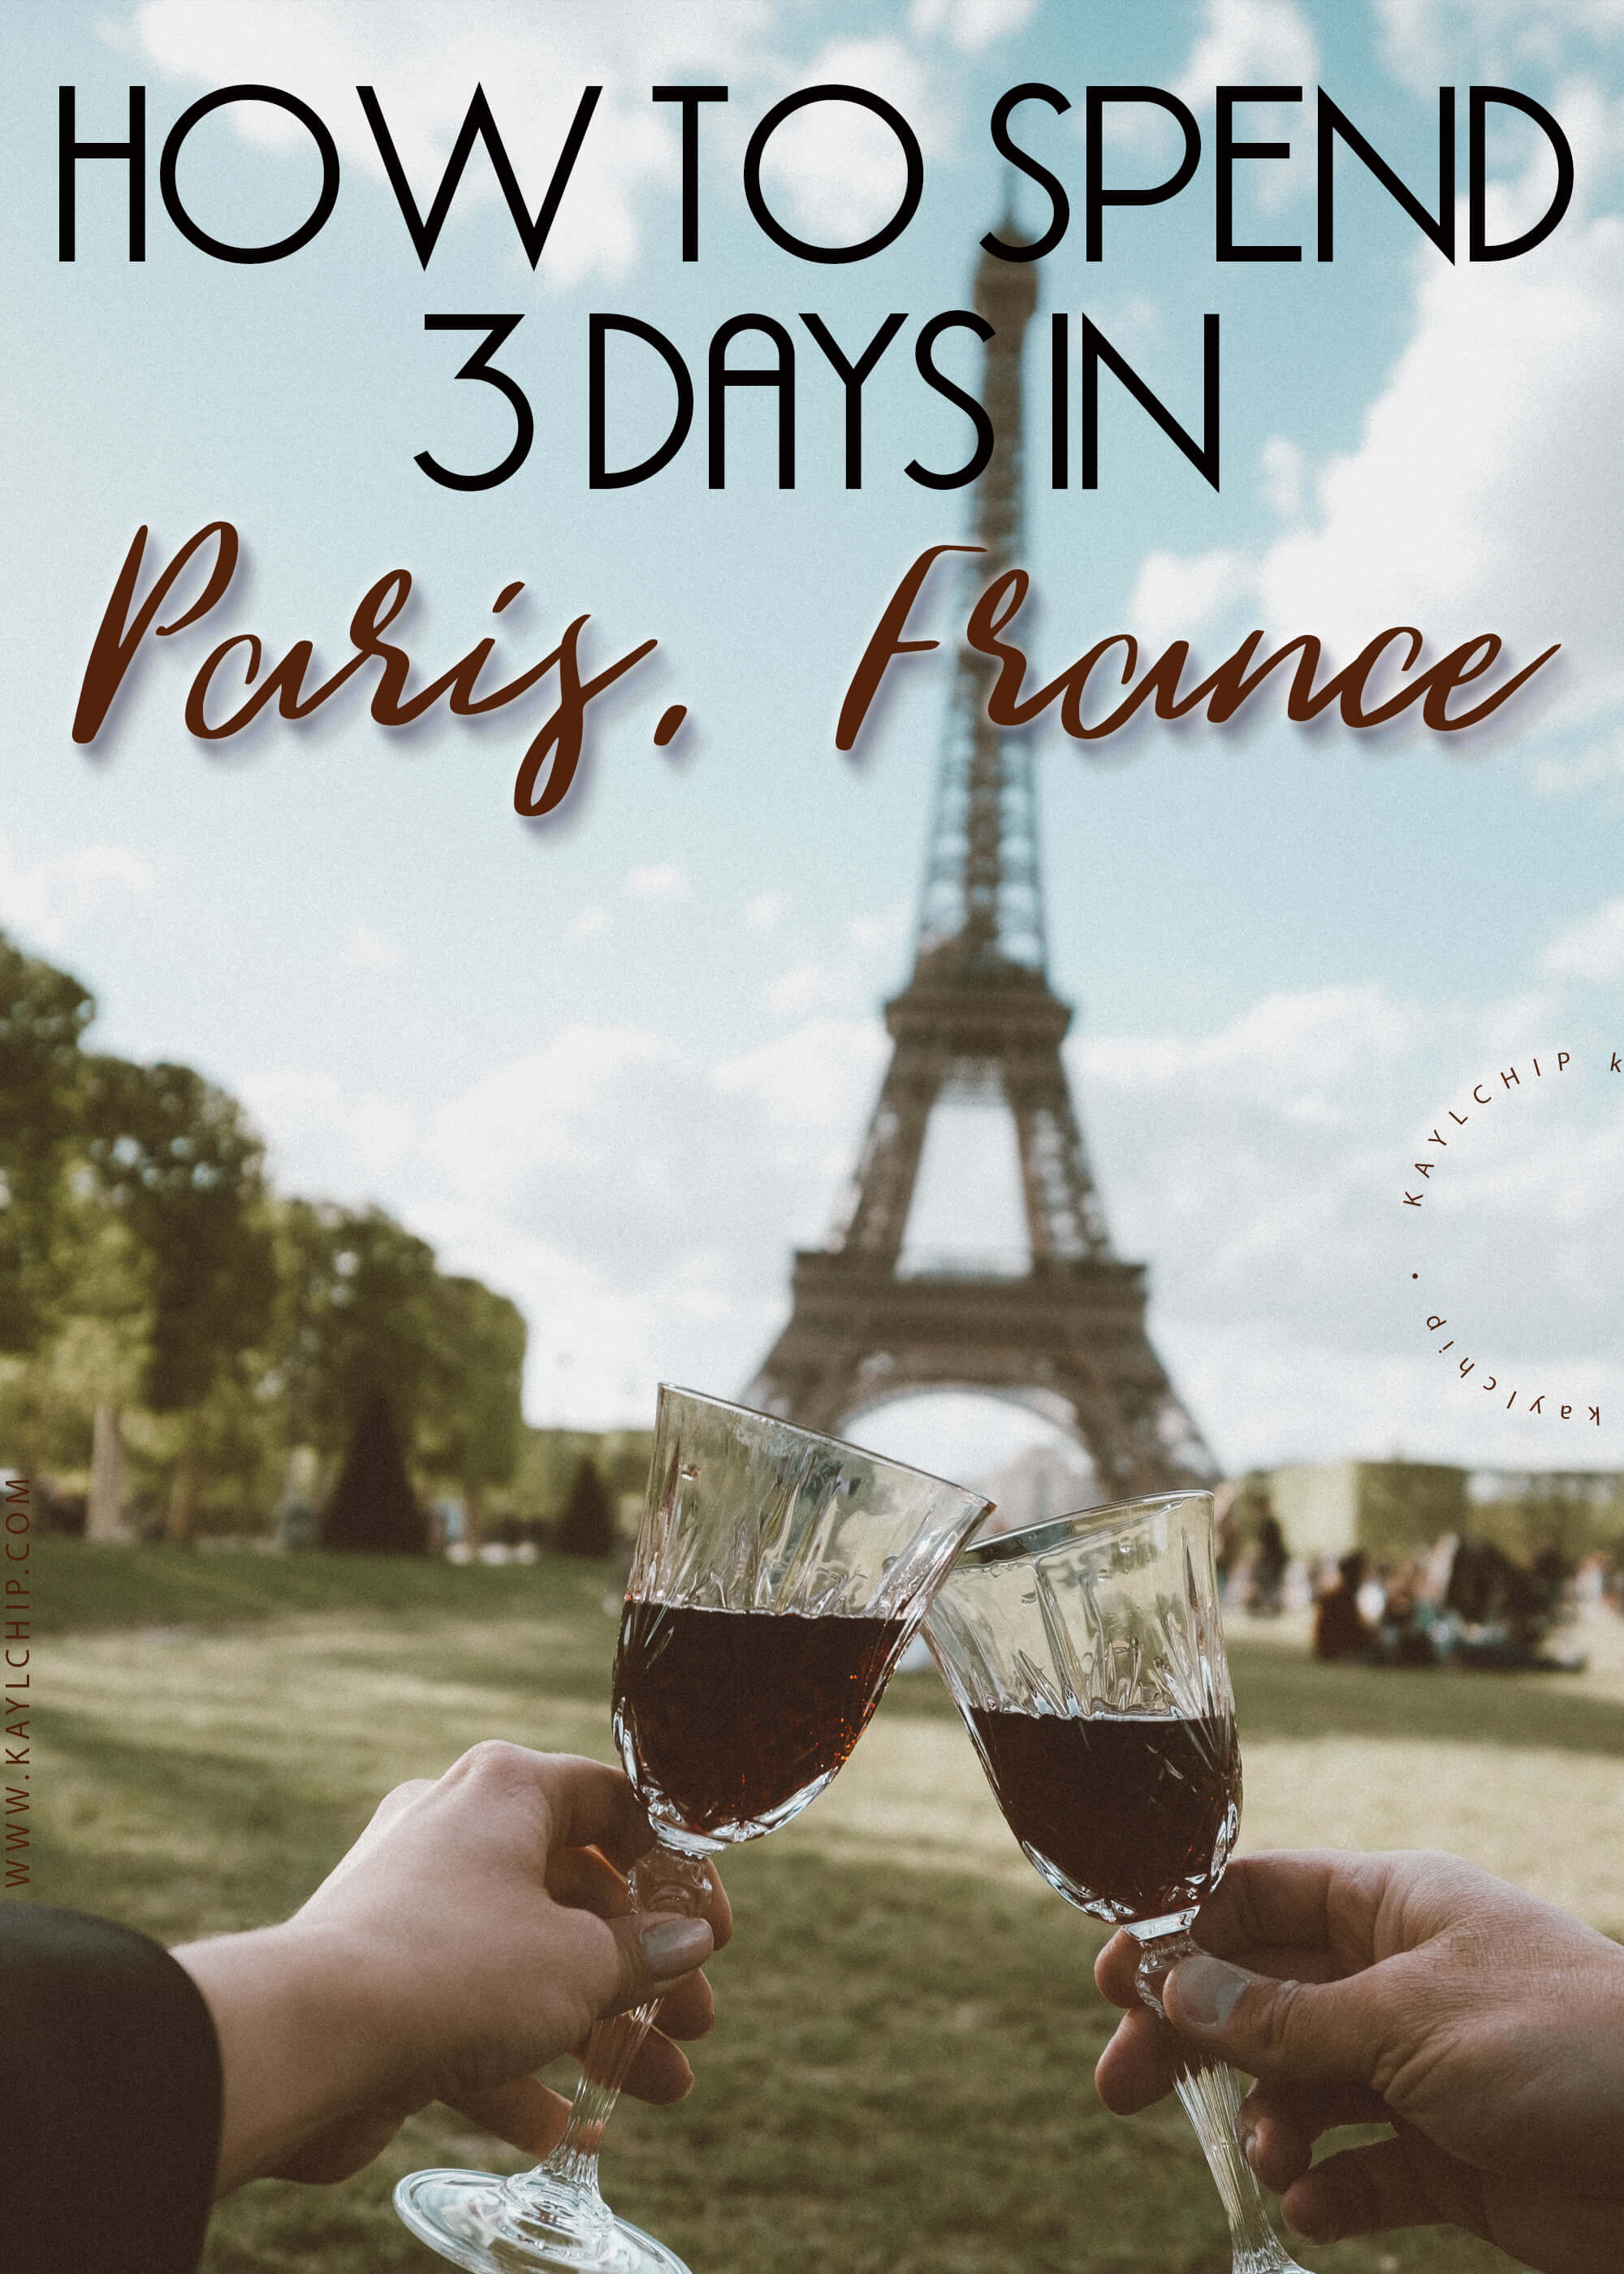 Spend 3 days in Paris